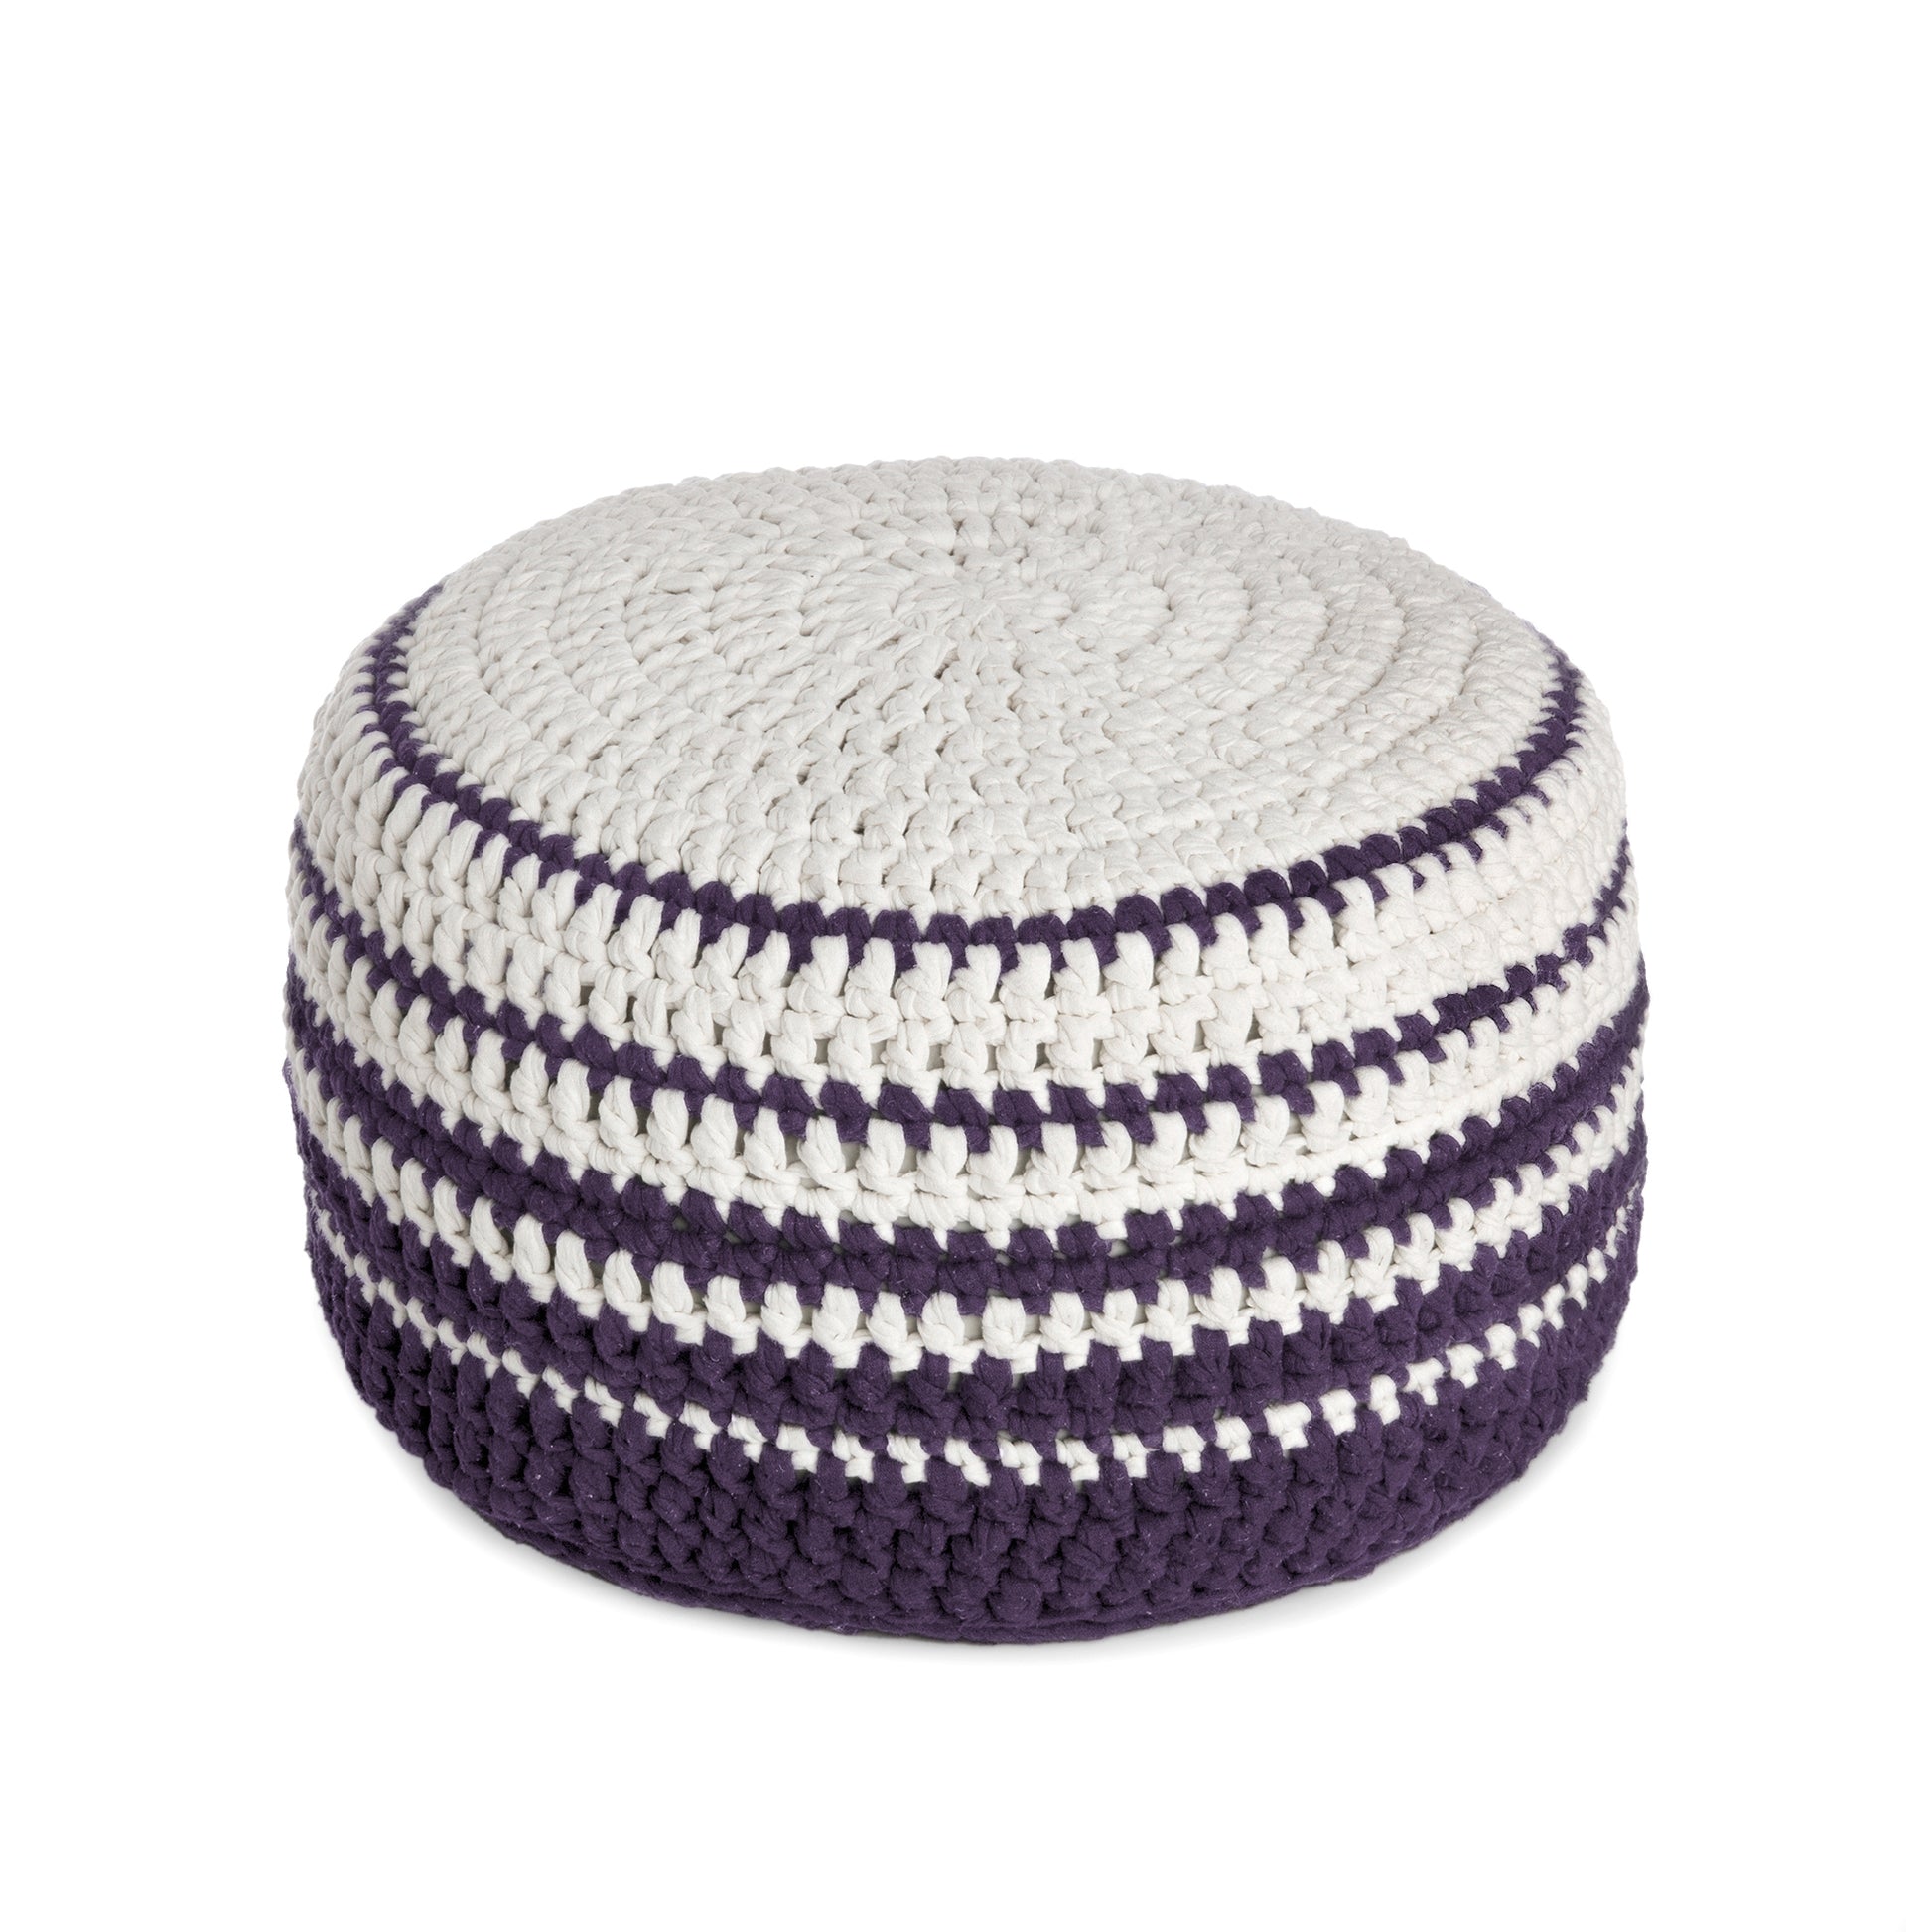 Puff de crochê artesanal listras, Roxo, com fio 100% algodão.  Fechamento com zíper, possibilitando a remoção da capa para lavagem.  Dimensões: Altura - 30cm; Diâmetro - 60cm. 